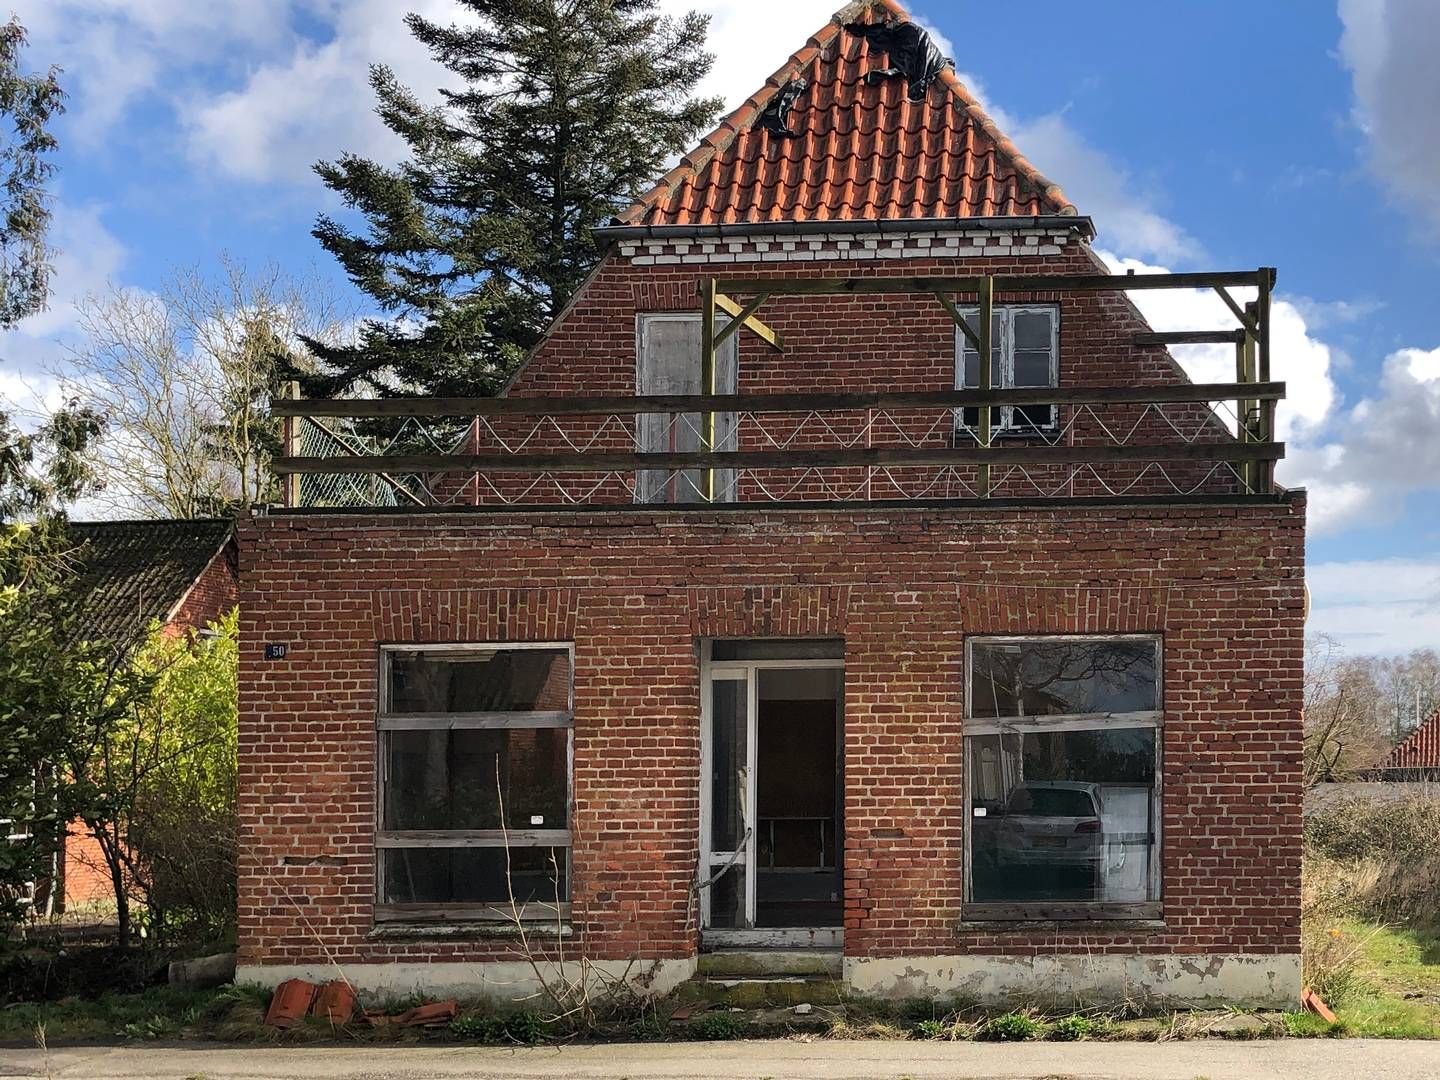 Prøvehuset i Horbelev skal bane vej for en mere bæredygtig udnyttelse af byggematerialer i forbindelse med kommunens nedrivningssager. | Foto: Guldborgsund Kommune / Pr